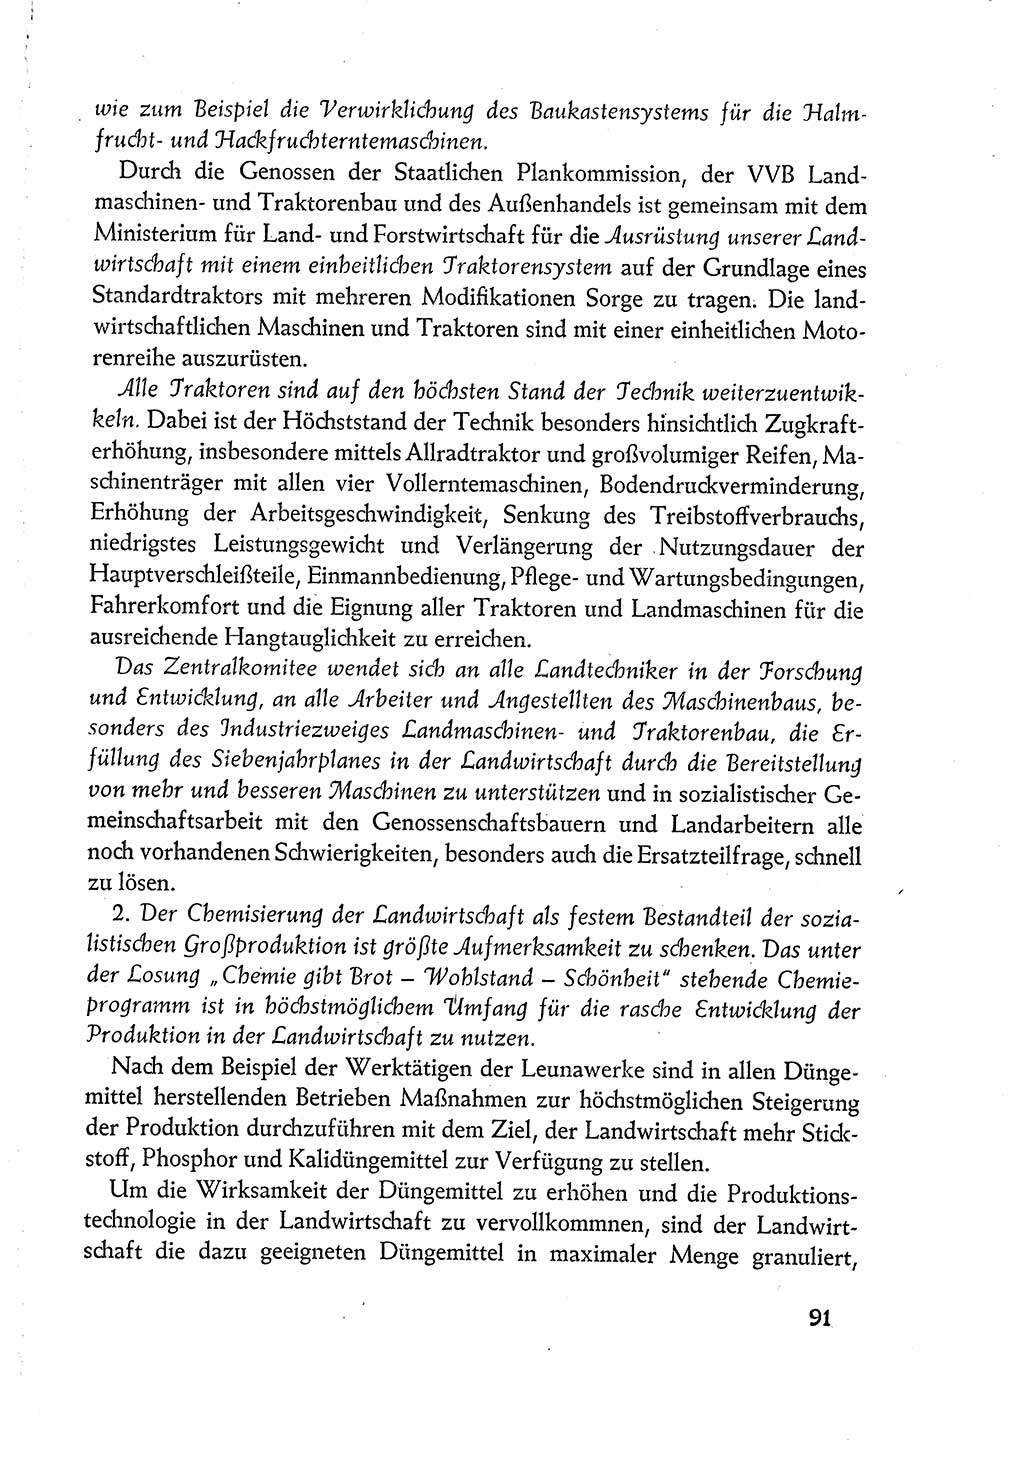 Dokumente der Sozialistischen Einheitspartei Deutschlands (SED) [Deutsche Demokratische Republik (DDR)] 1960-1961, Seite 91 (Dok. SED DDR 1960-1961, S. 91)